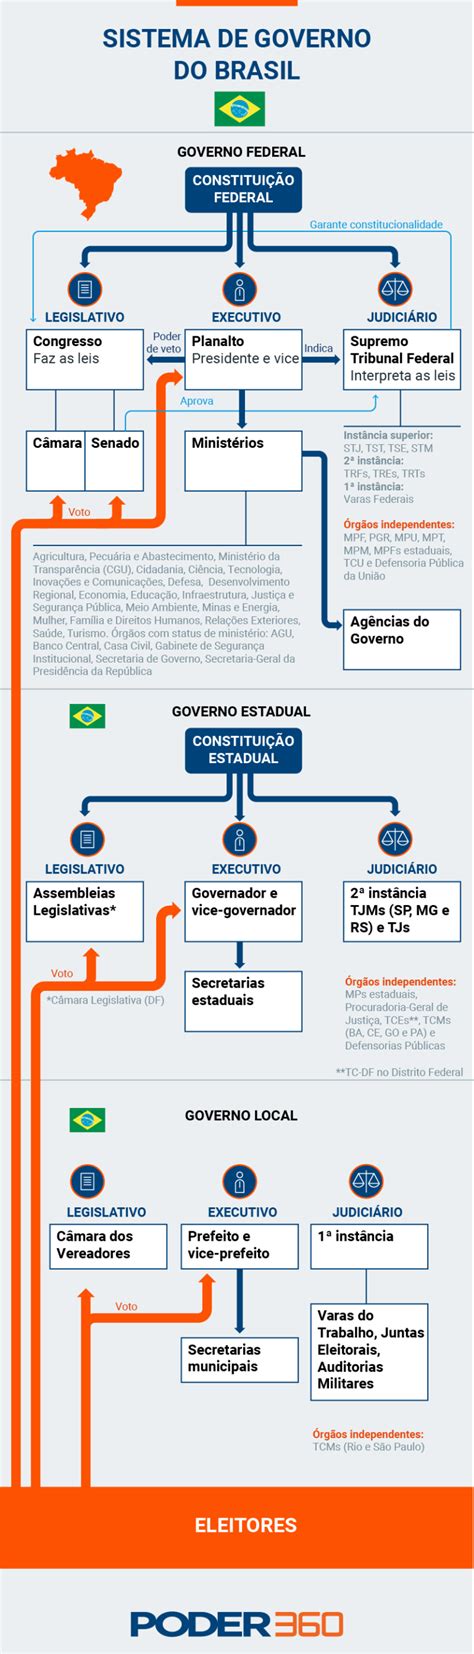 Entenda As Diferenças Dos Sistemas De Governo Do Brasil E Dos Eua